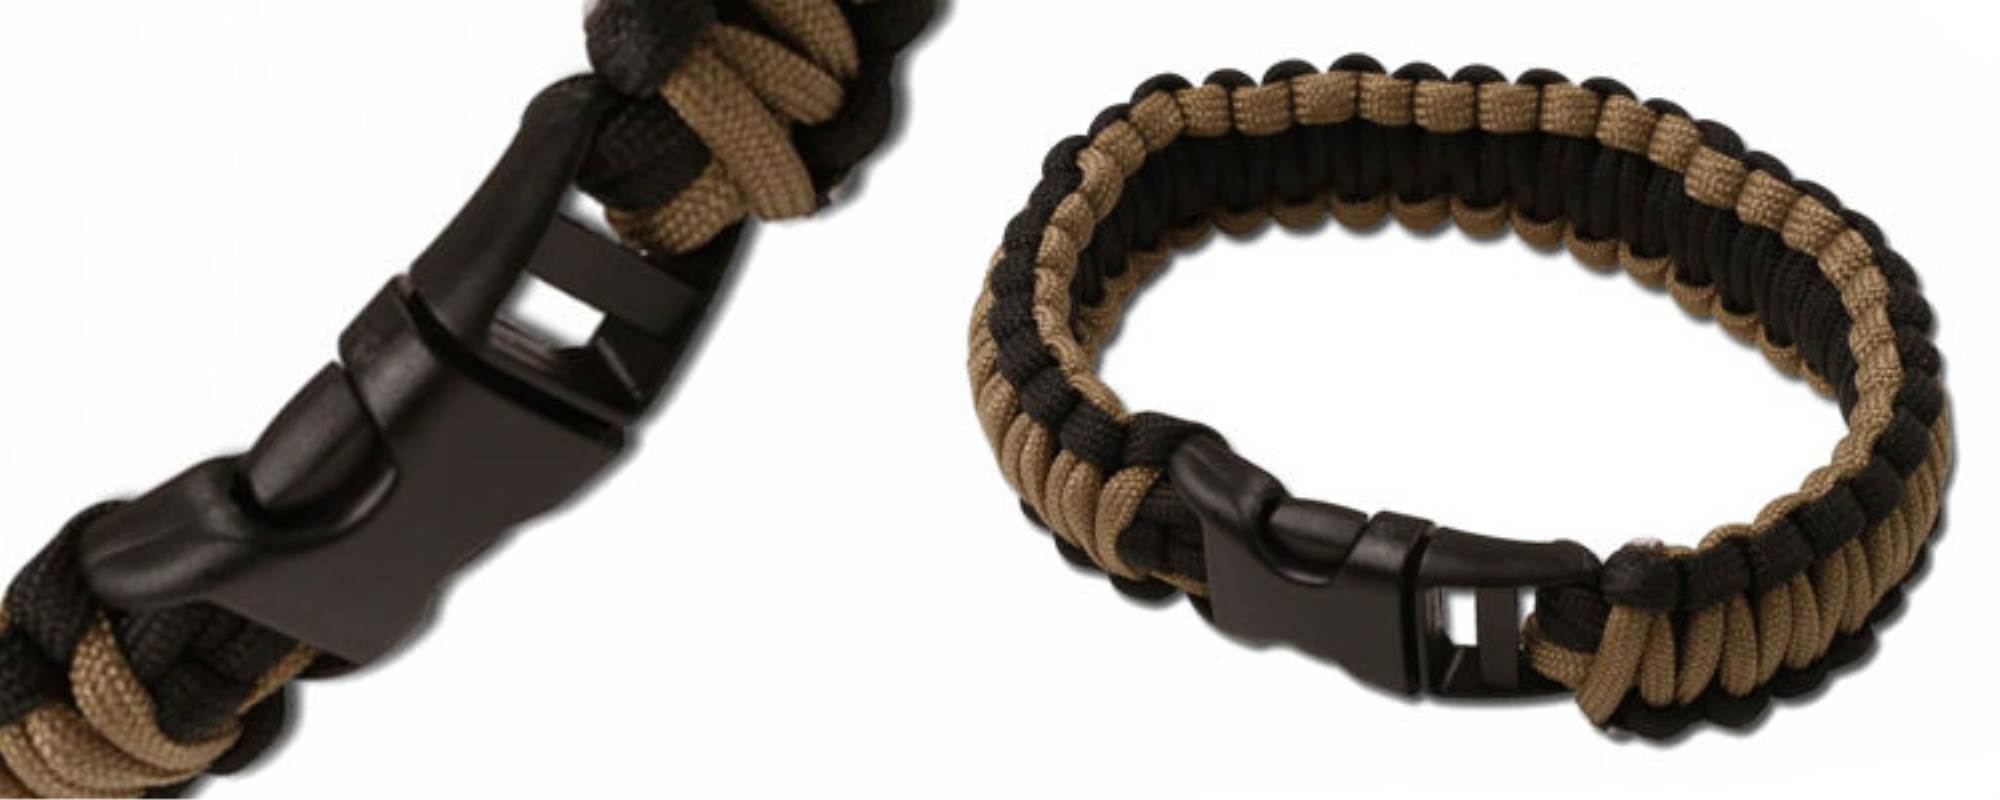 Black/Coyote Paracord Survival Bracelet - Large - Tactical